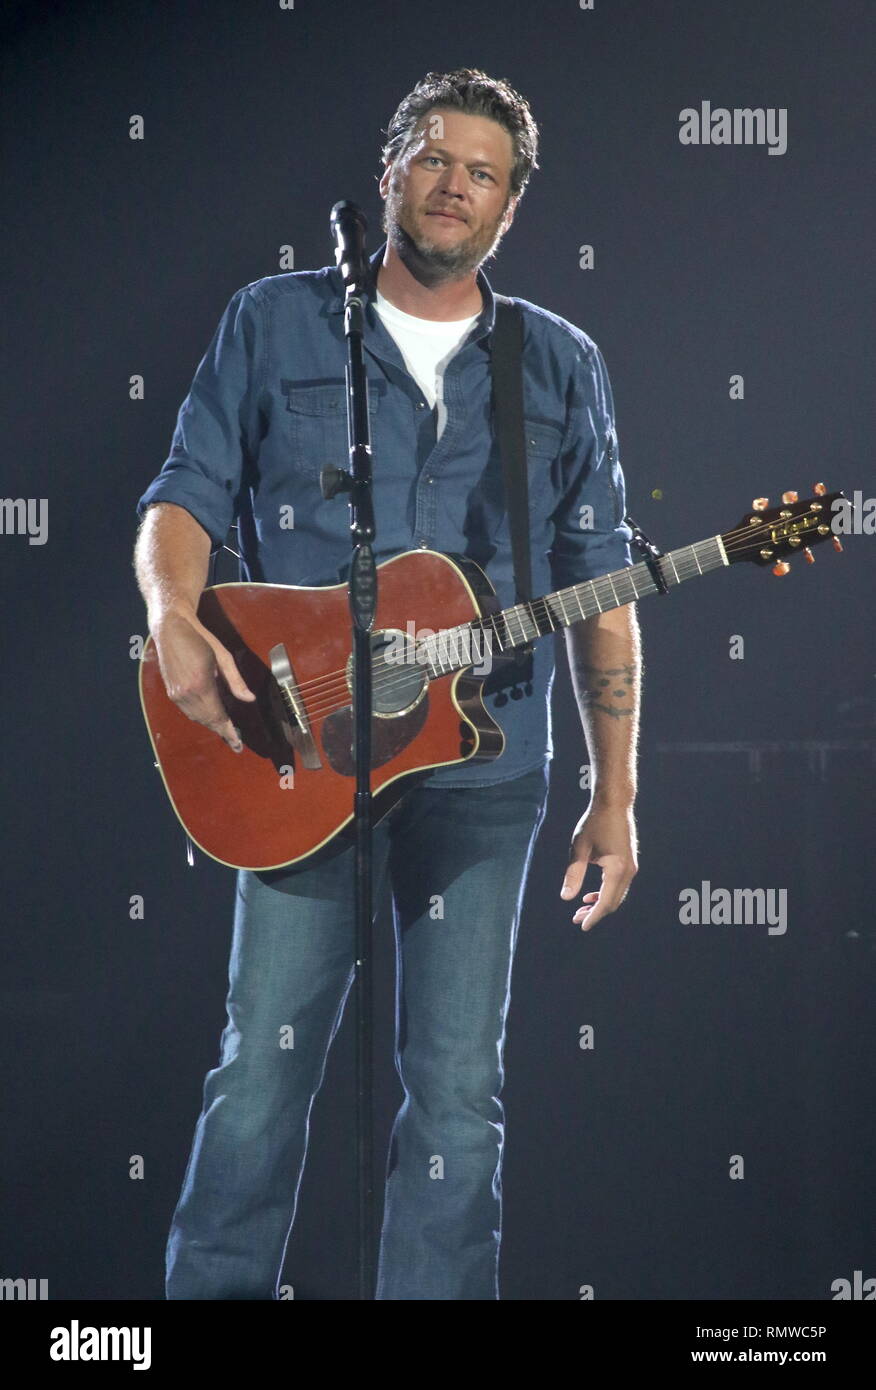 Musiker Blake Shelton wird gezeigt auf der Bühne während einer "live"-Konzert aussehen. Stockfoto